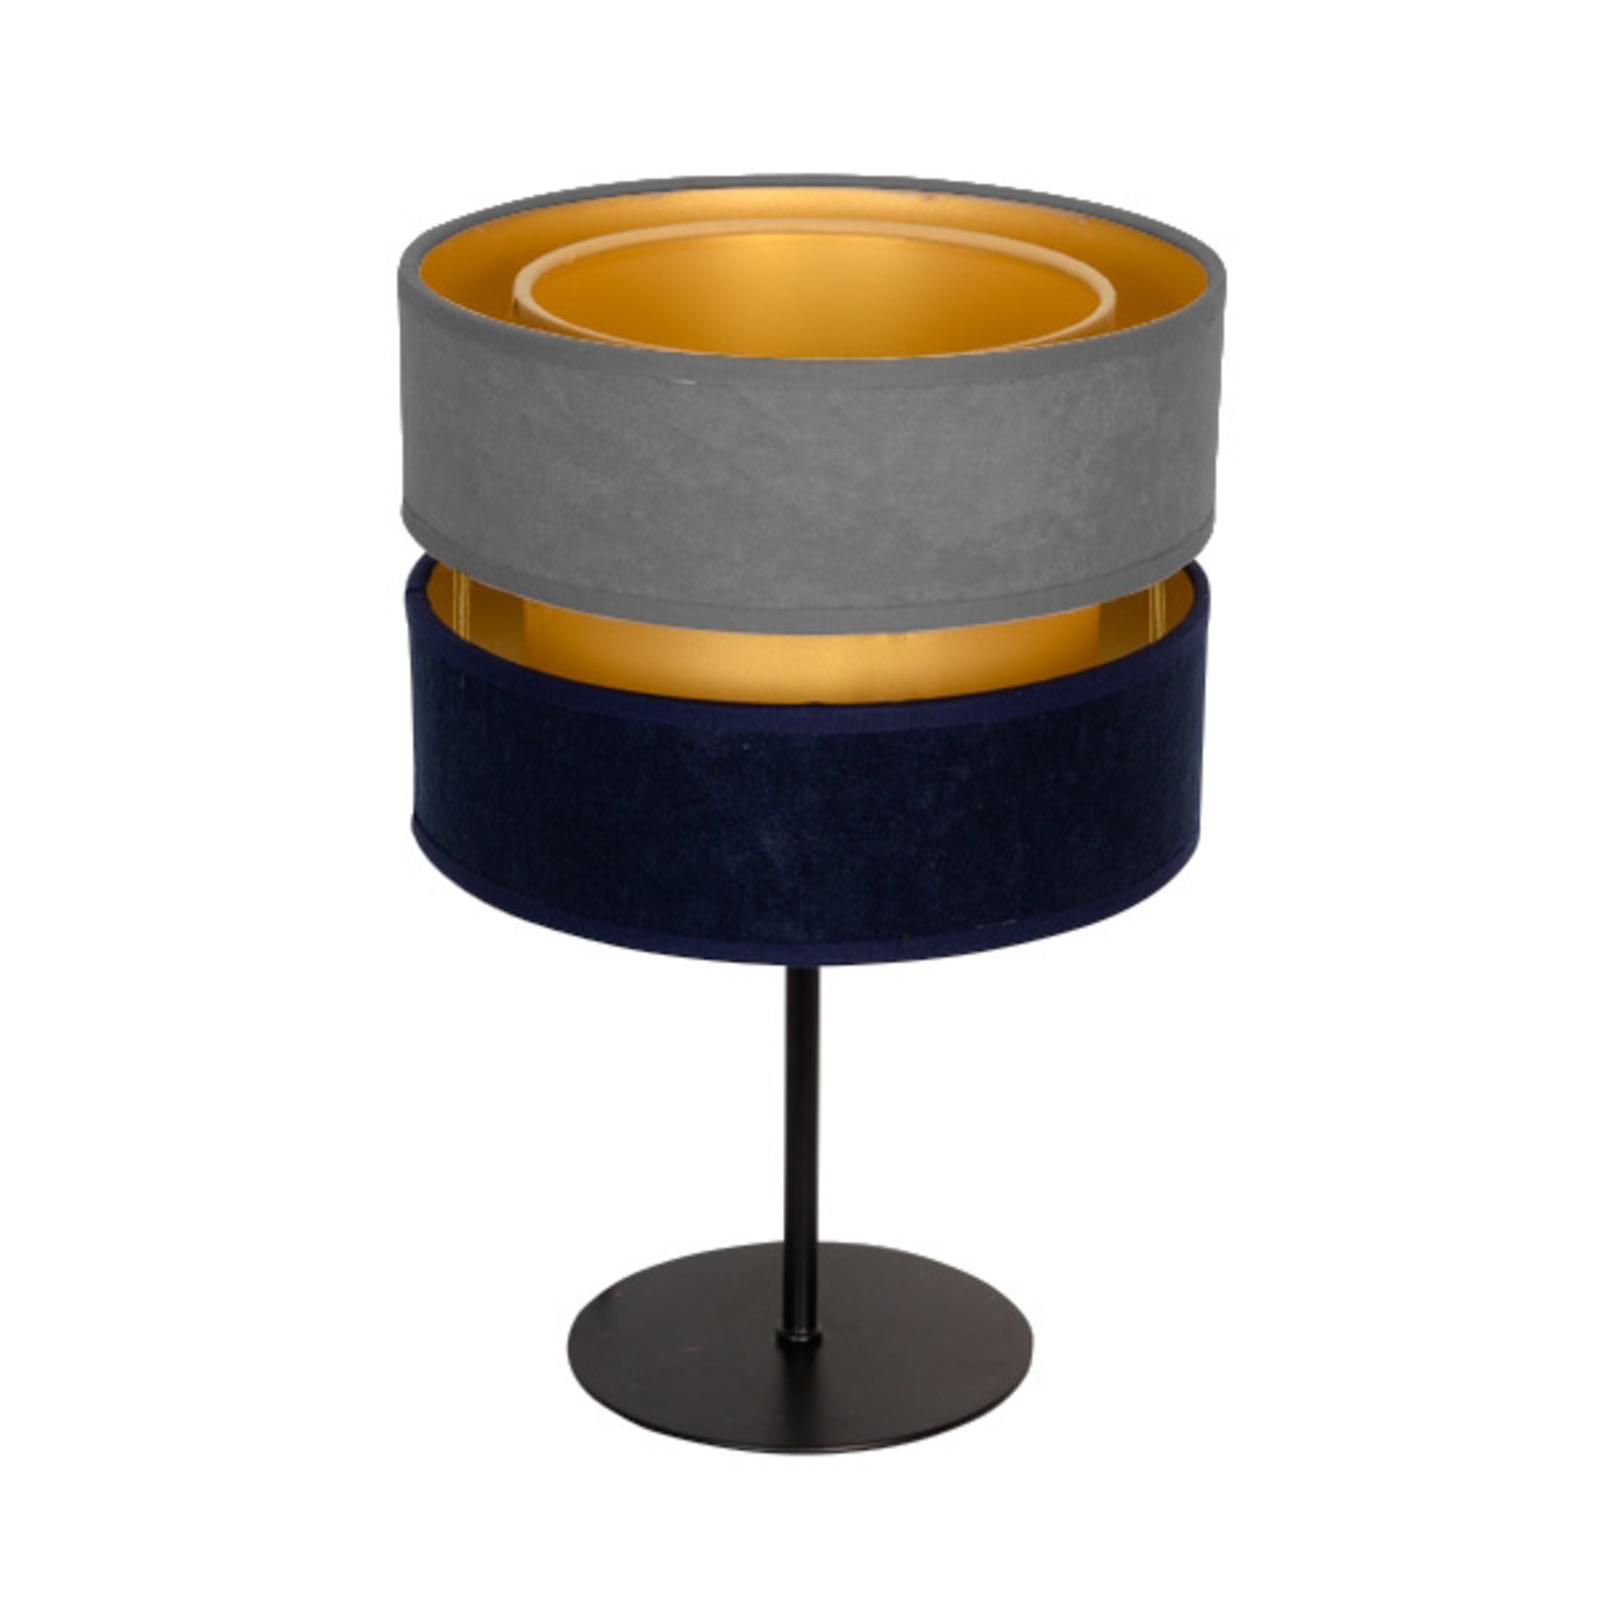 Stolní lampa Duo, modrá/šedá/zlatá, výška 30cm